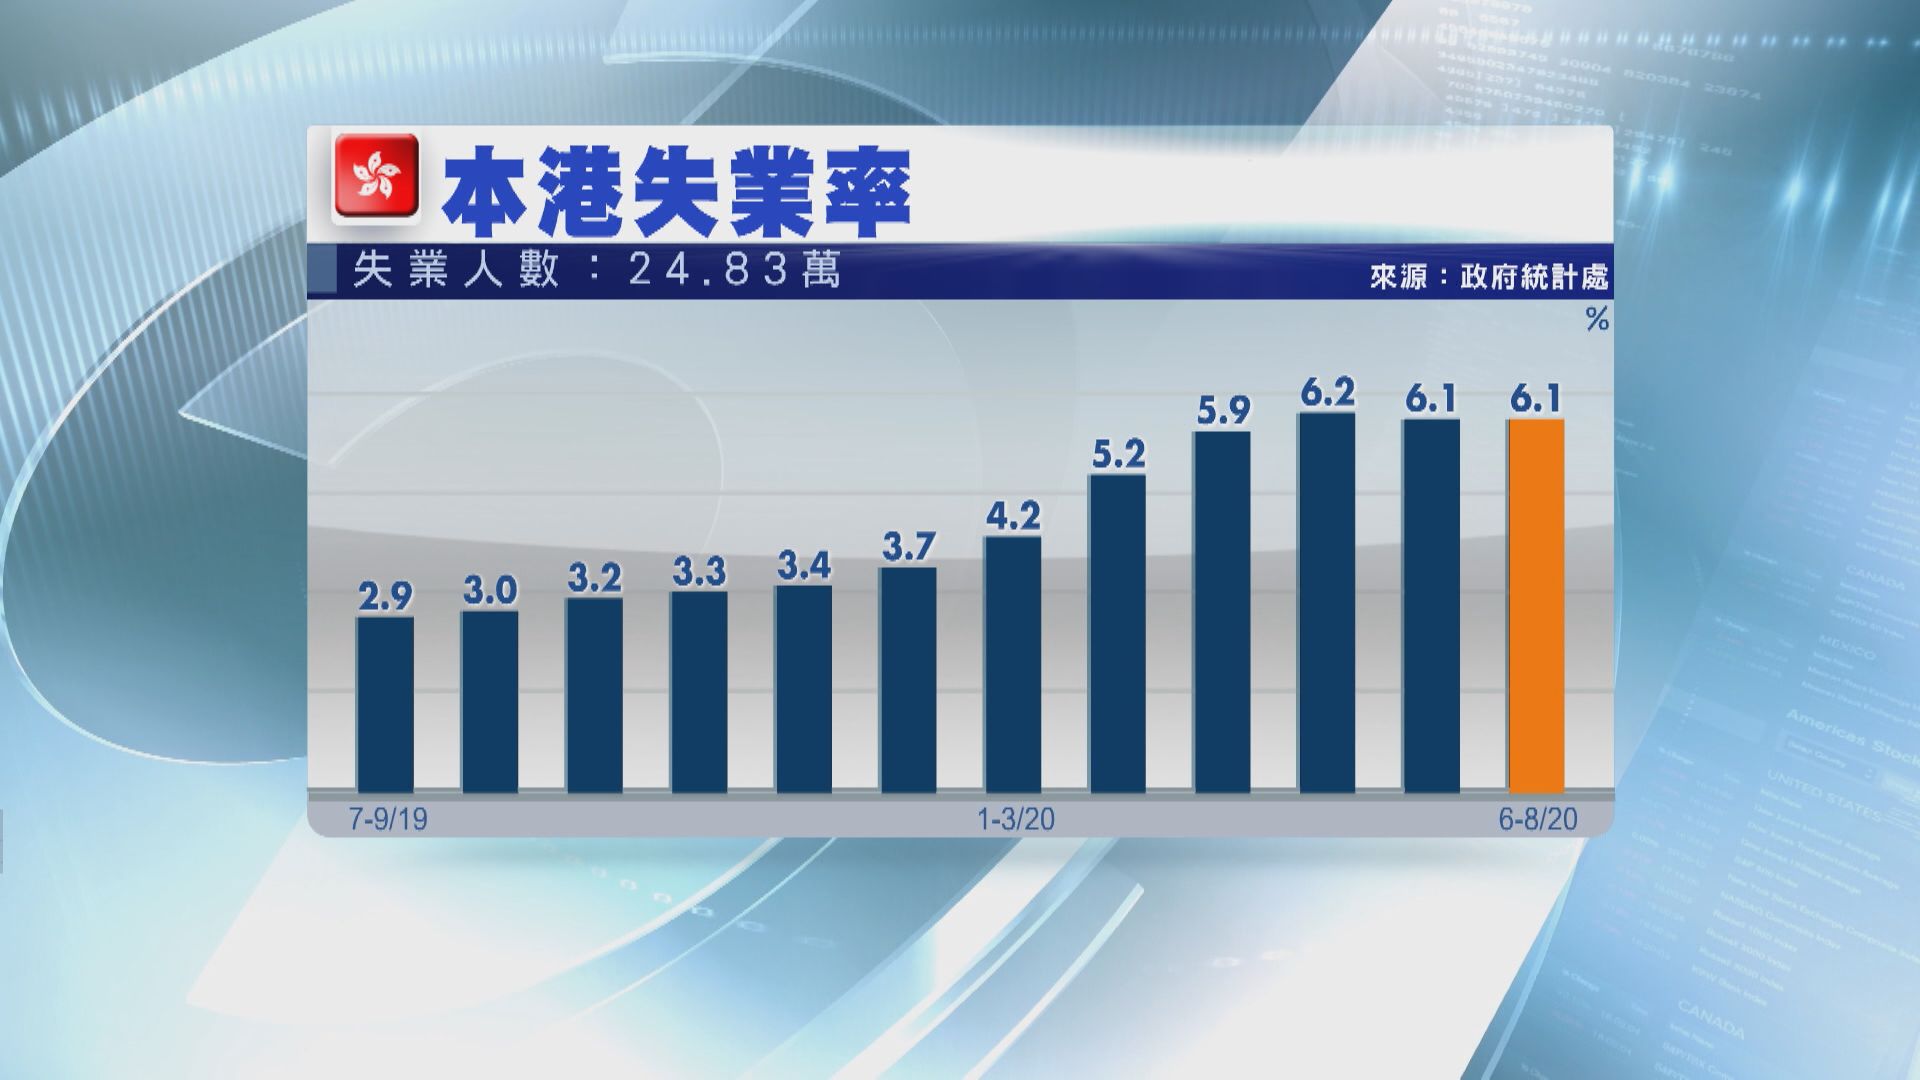 本港最新失業率維持6.1% 低於預期